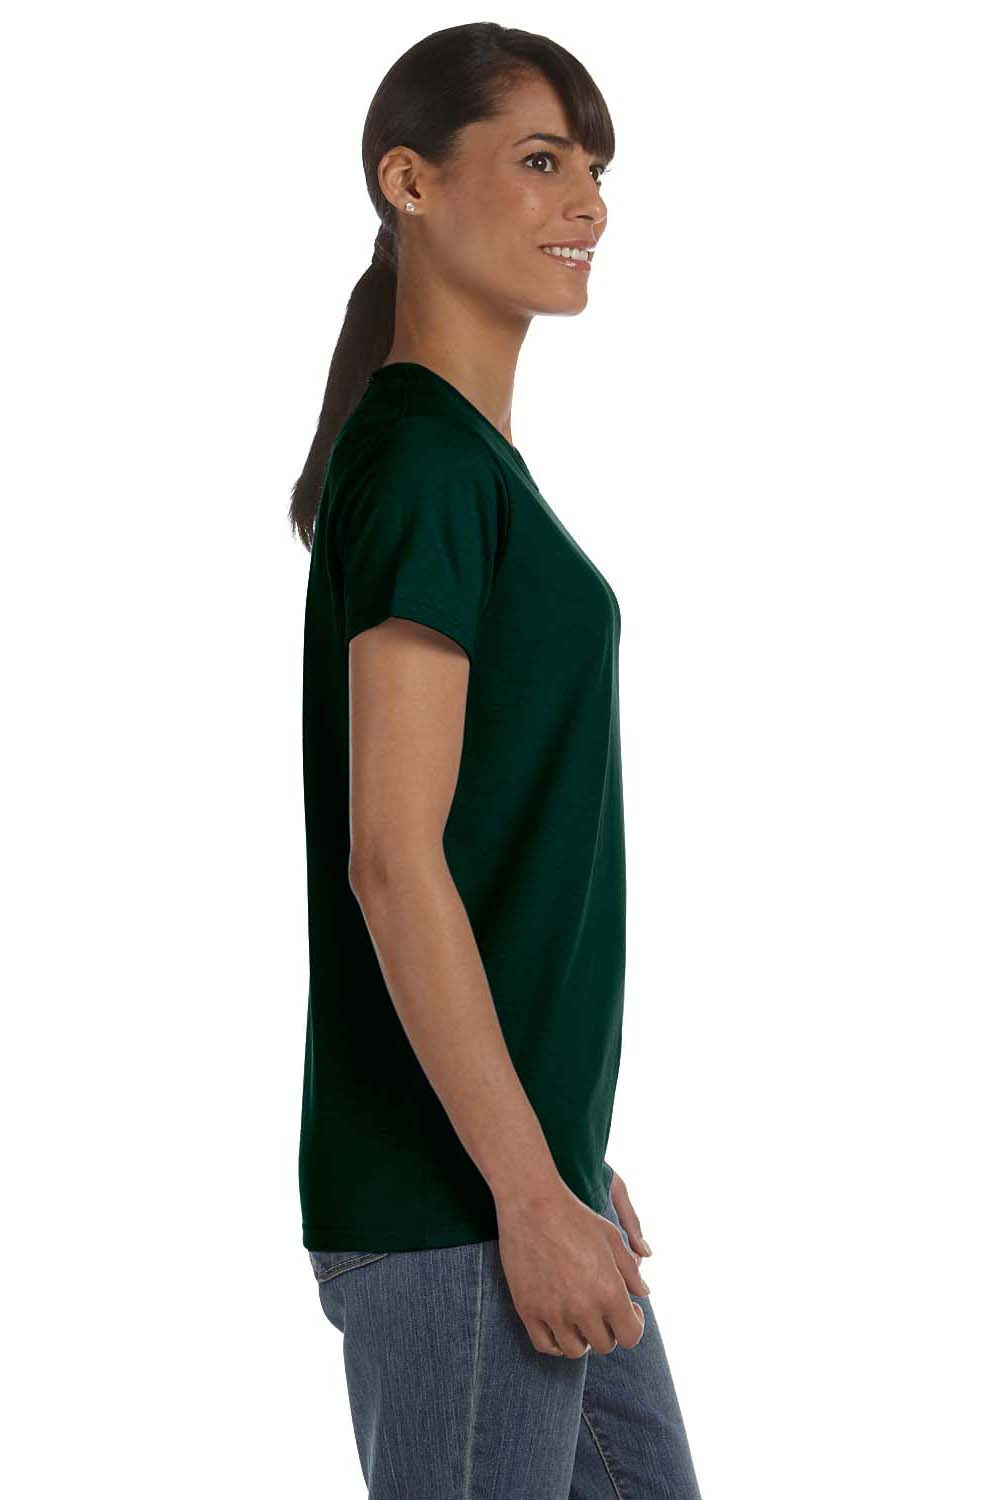 Gildan G500L Womens Short Sleeve Crewneck T-Shirt Forest Green Side